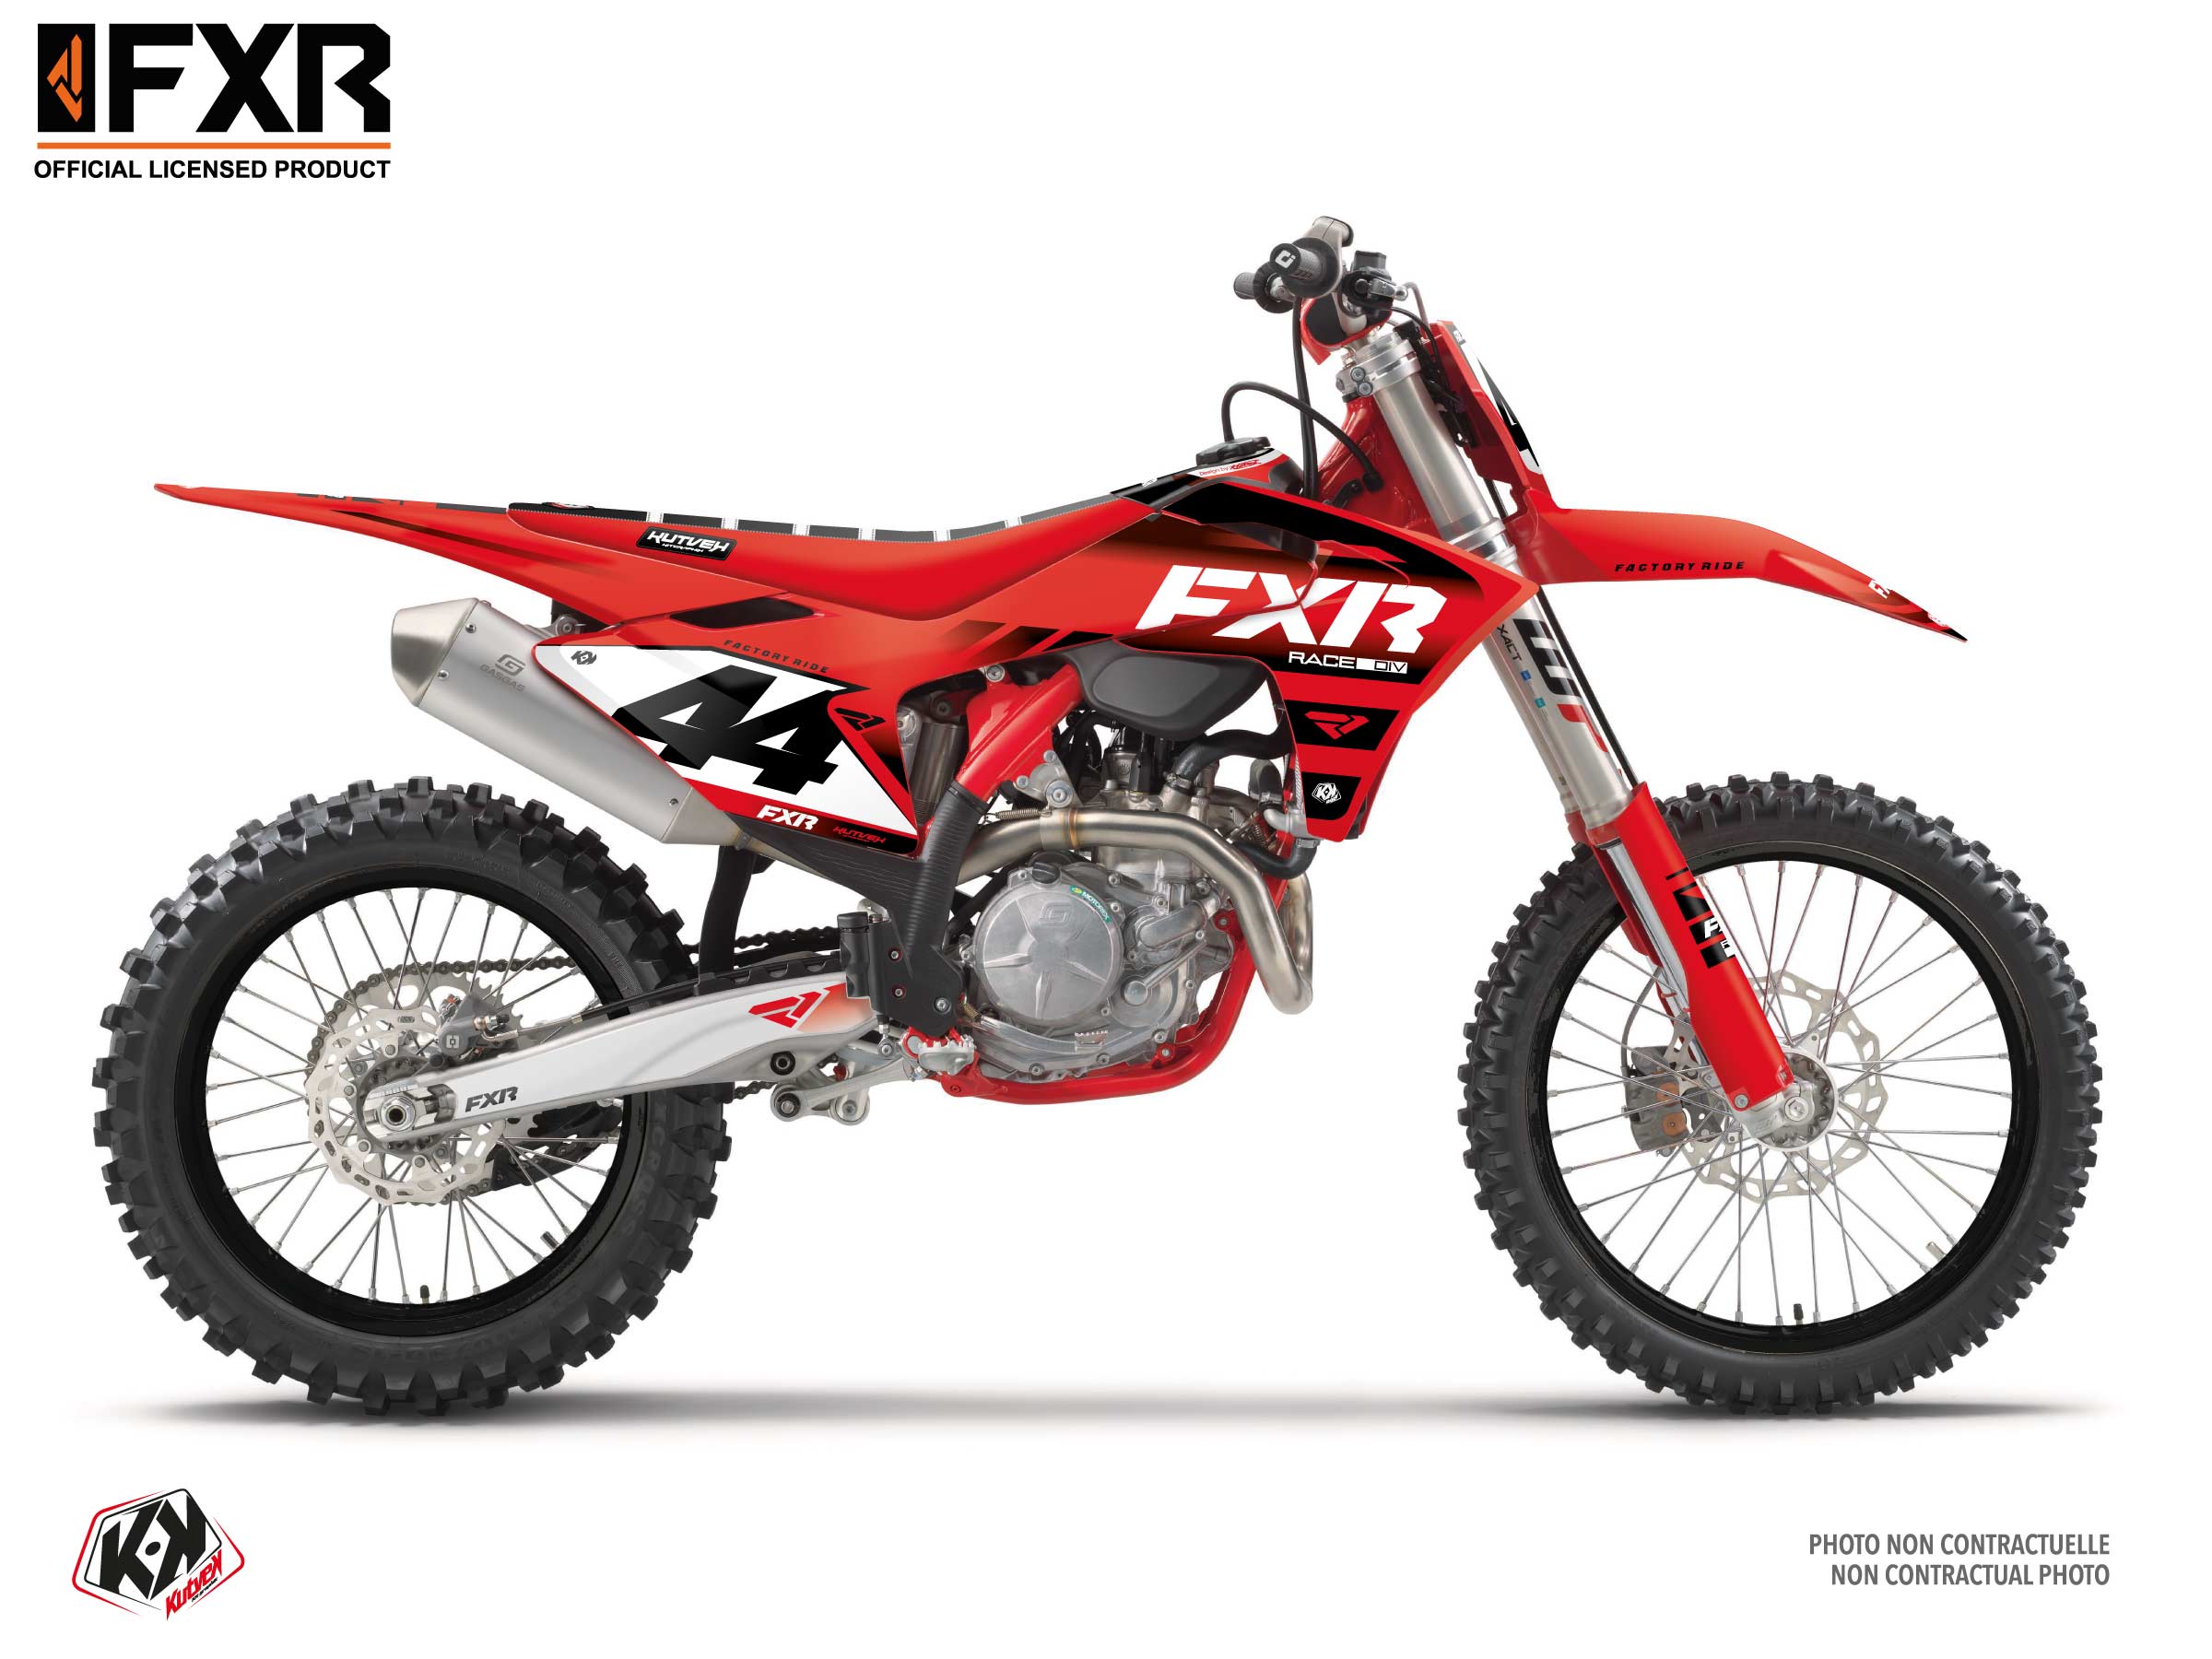 Gasgas Ex 300 Dirt Bike Fxr Revo Graphic Kit Red